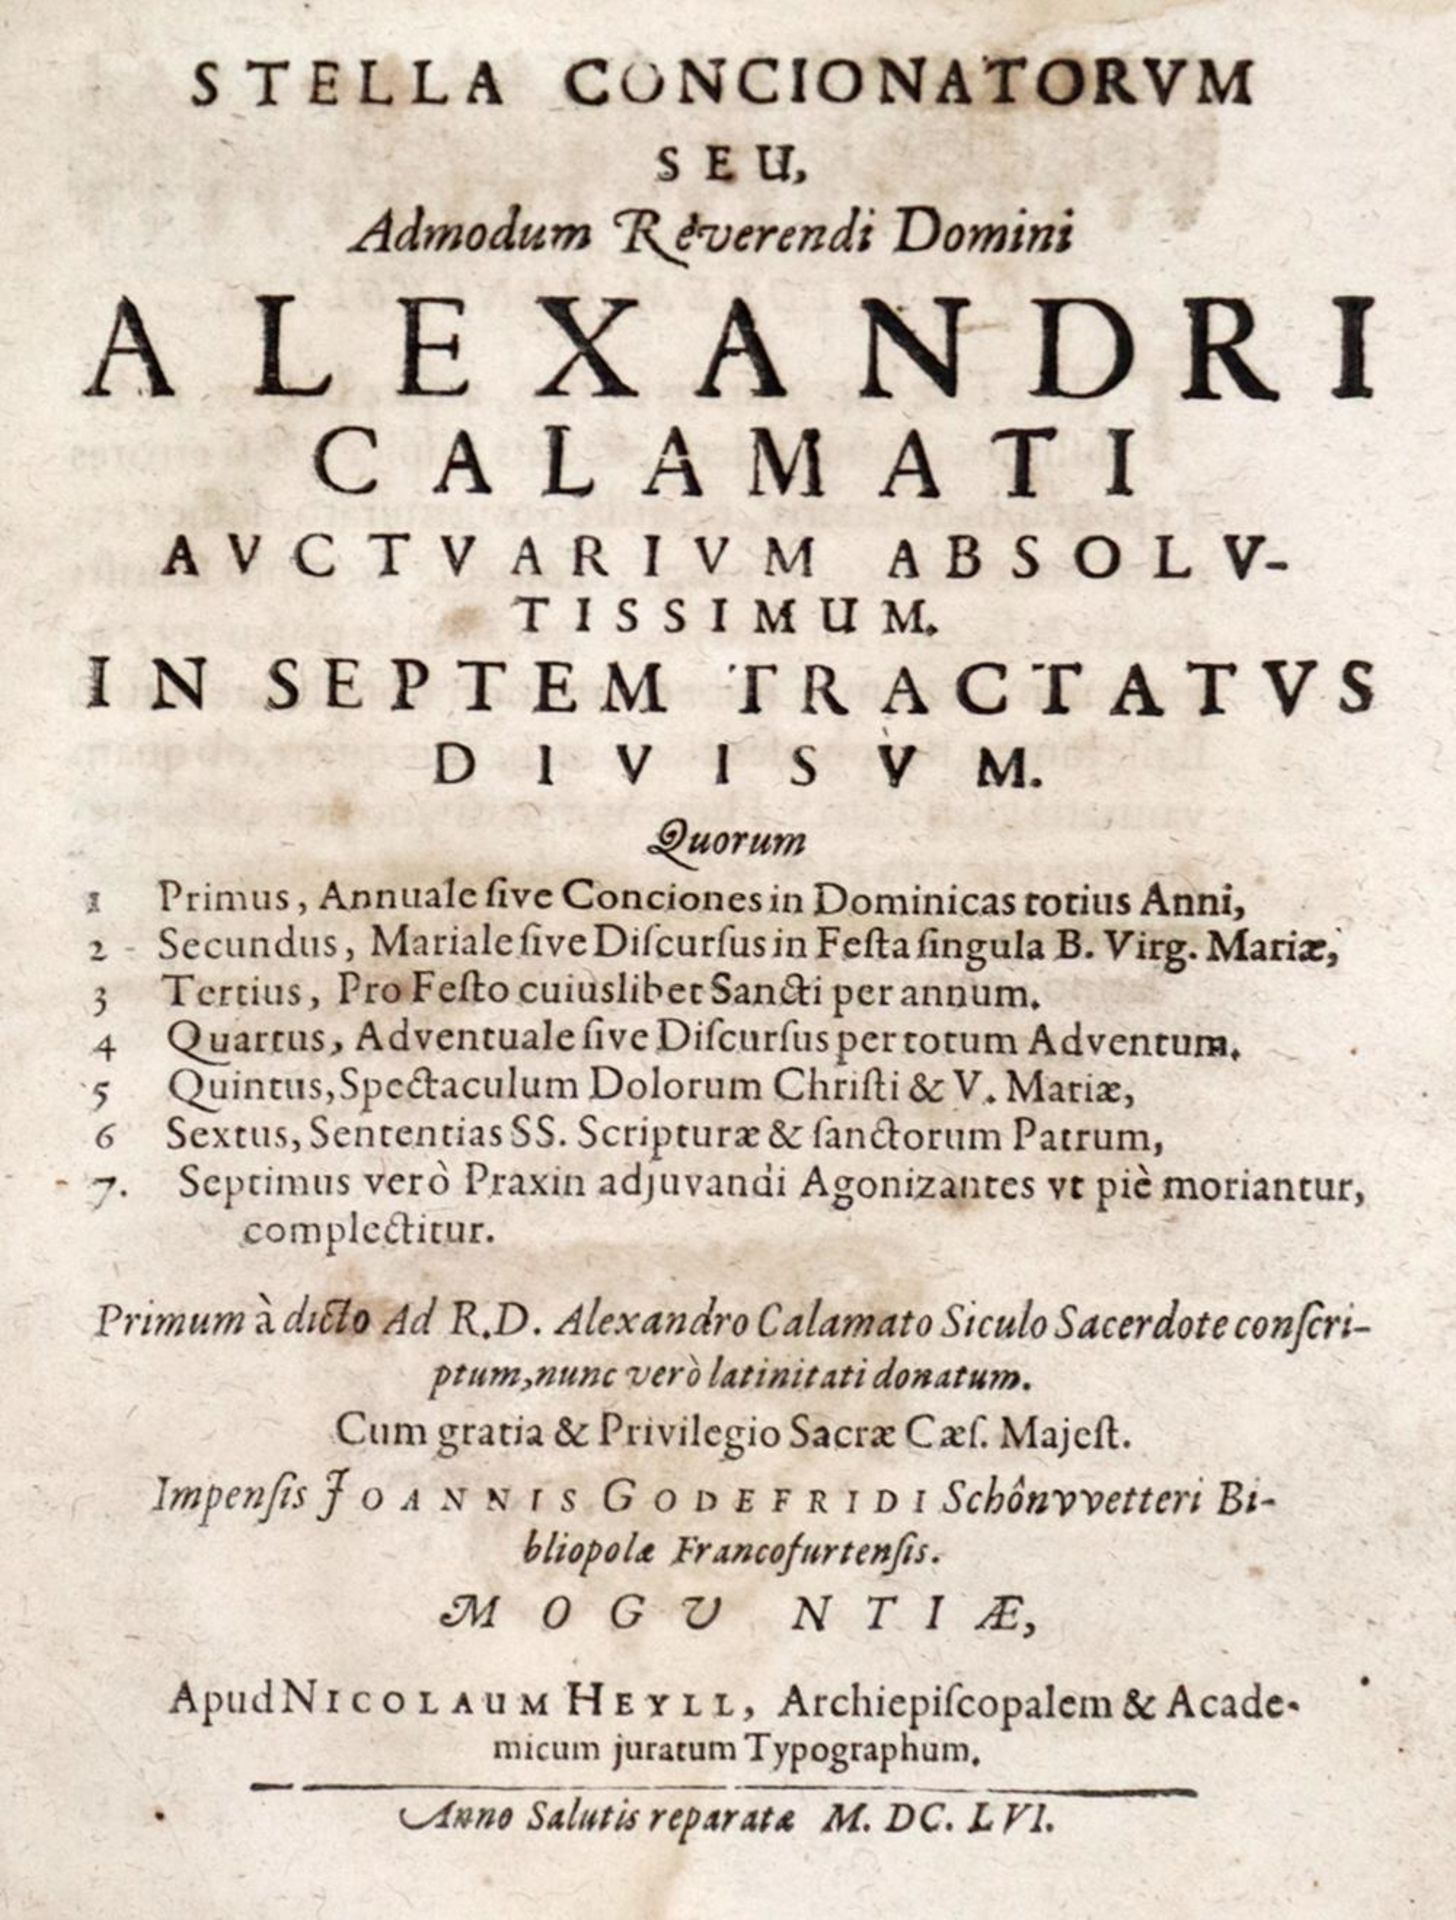 Calamatus,A.Calamatus,A. Stella Concionatorum... In septem tractatus divisum... Tle. 1-Cala